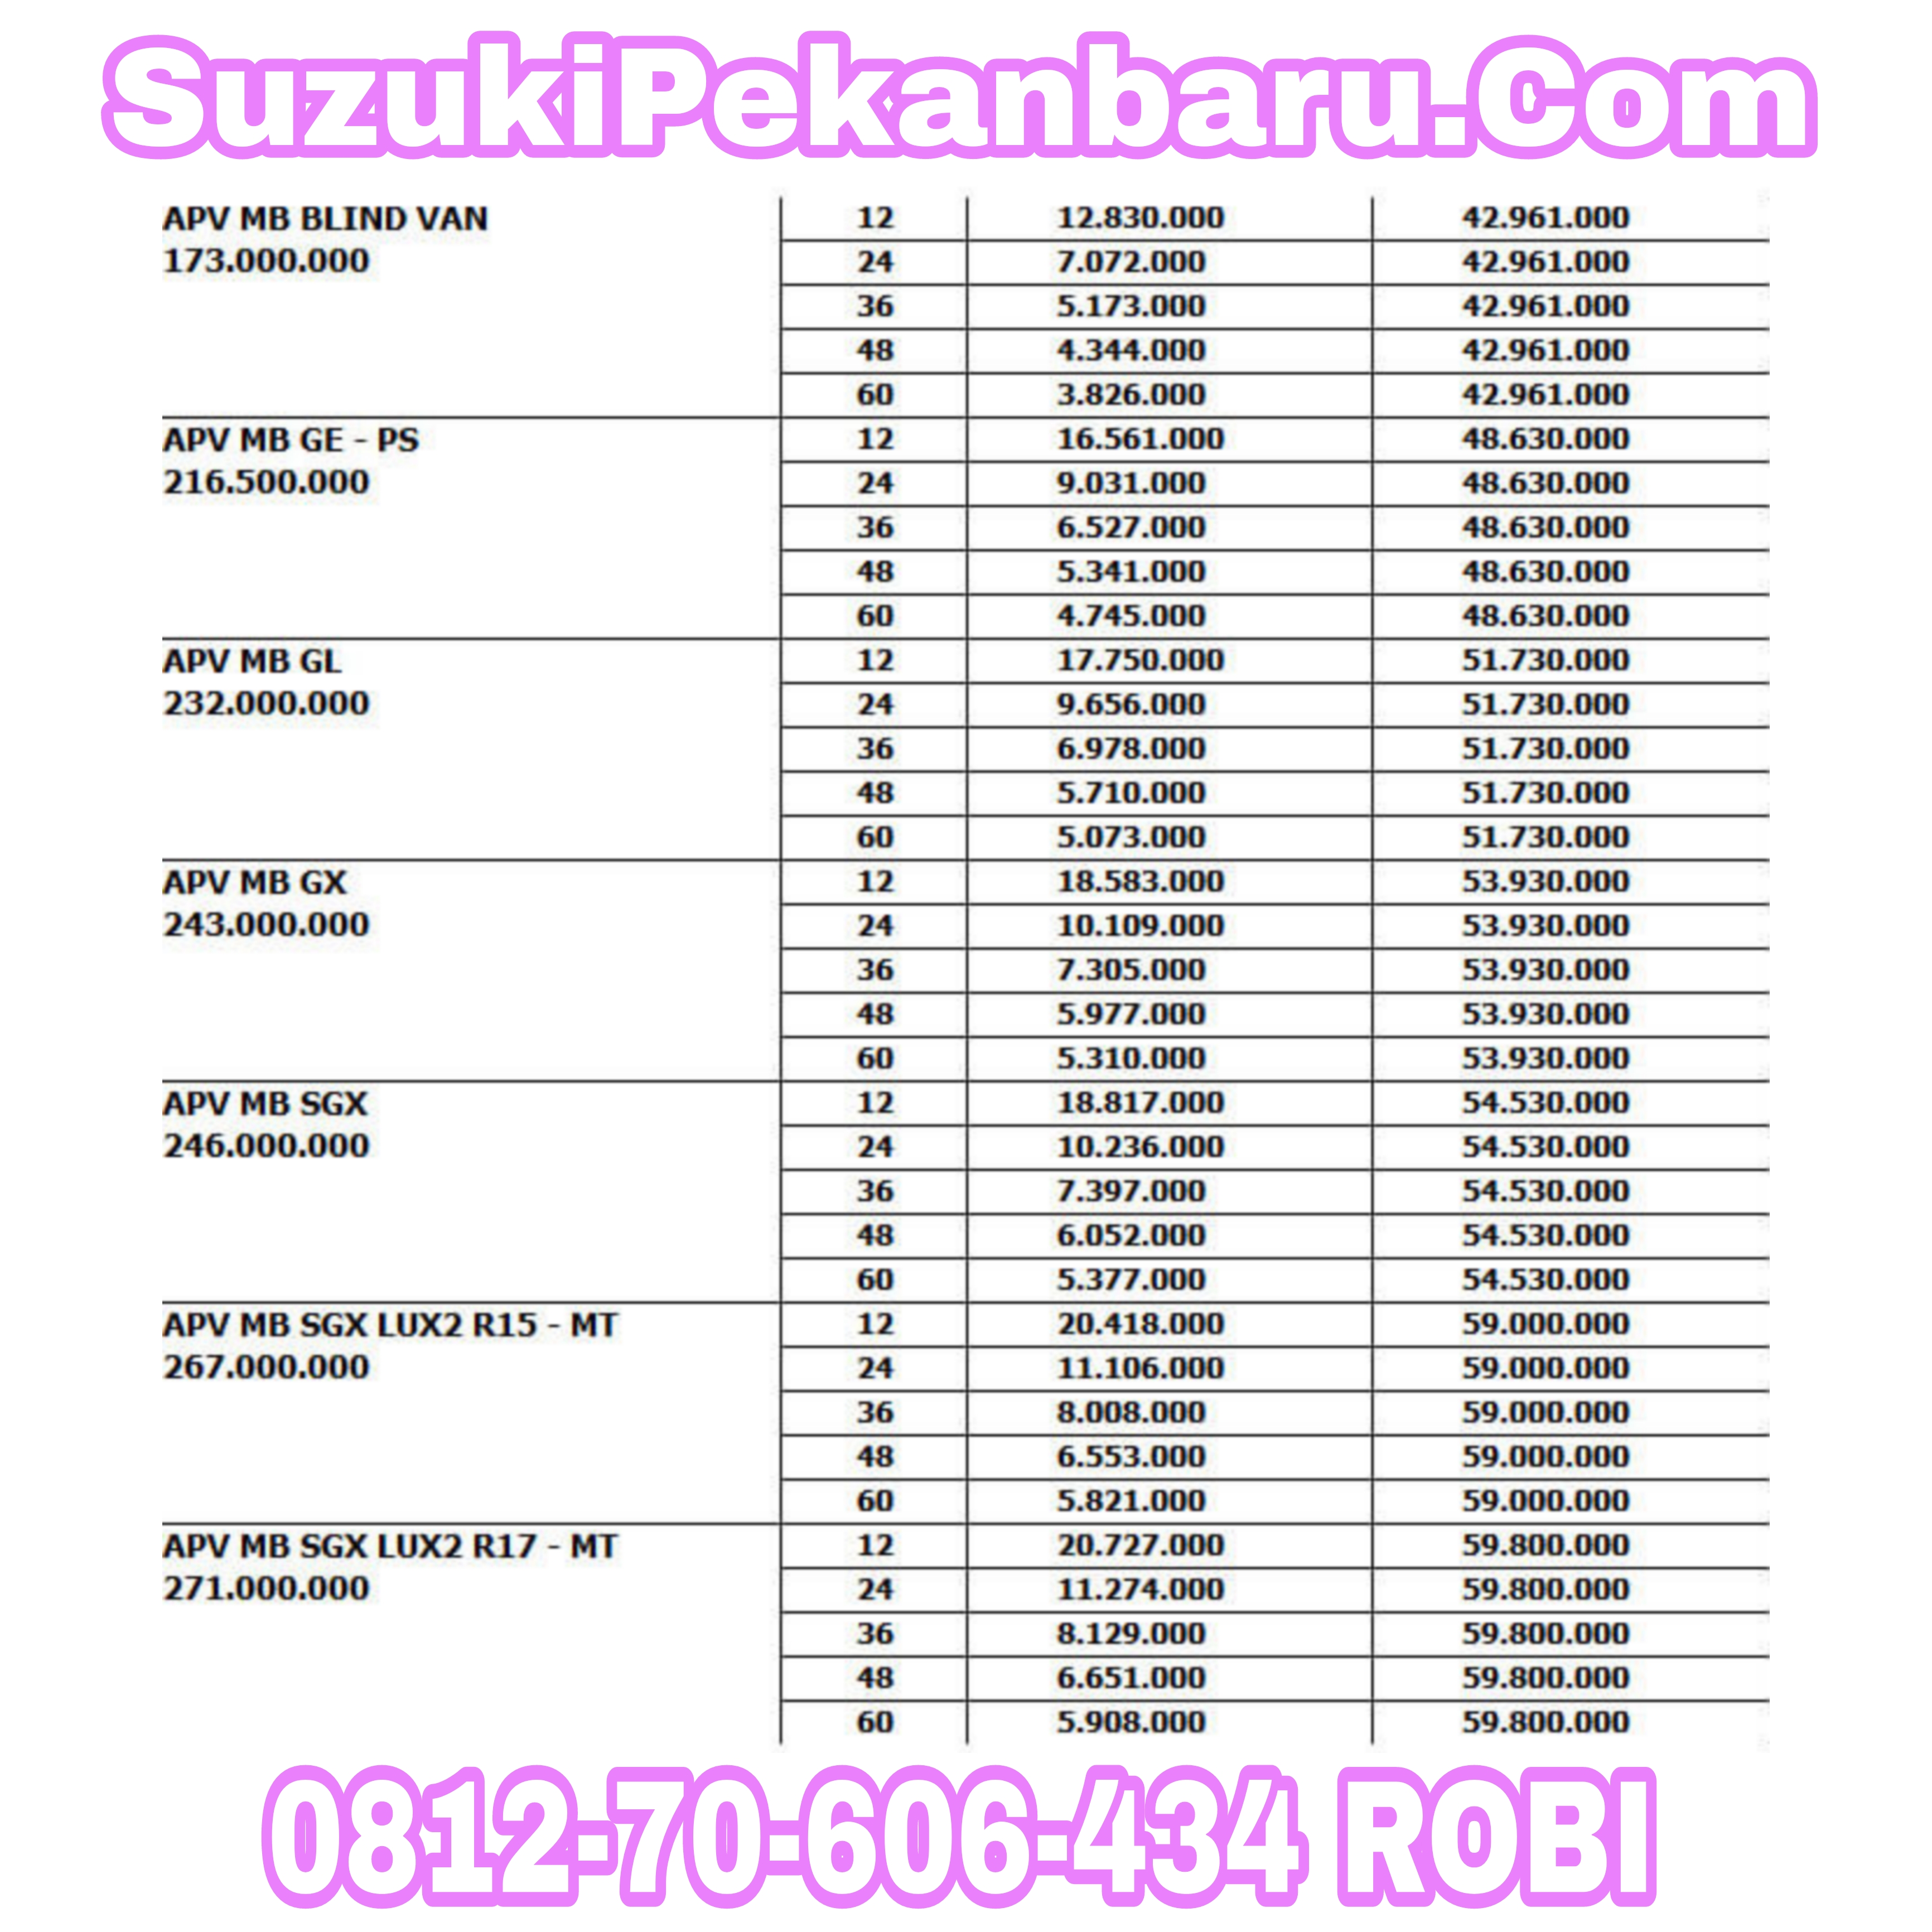 0812-70-606-434 | Suzuki Pekanbaru | Dealer Suzuki Pekanbaru